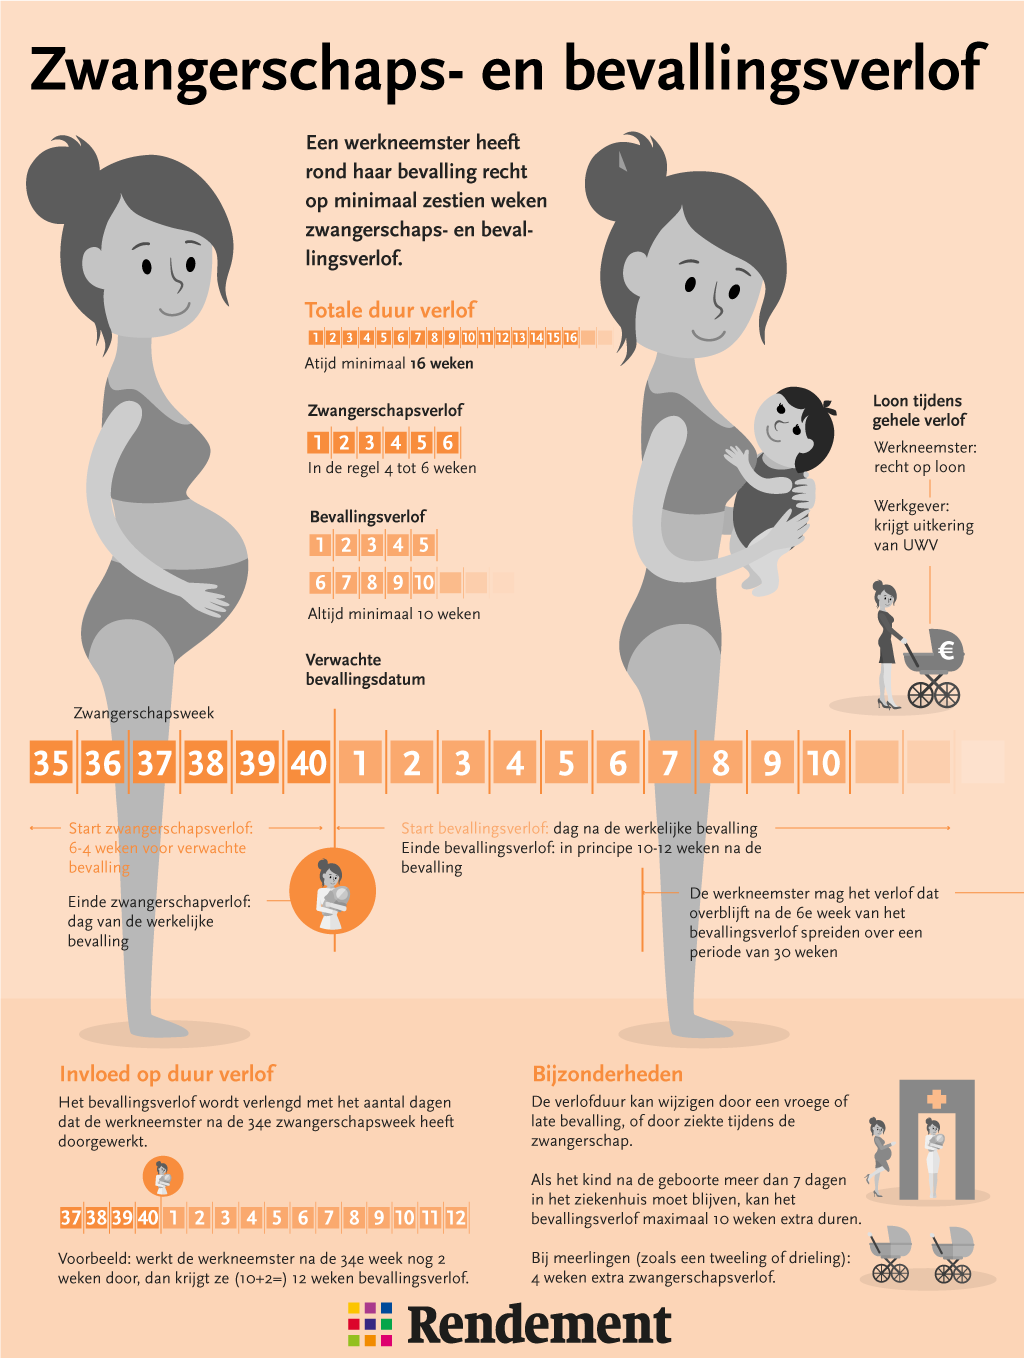 Zwangerschaps- en bevallingsverlof